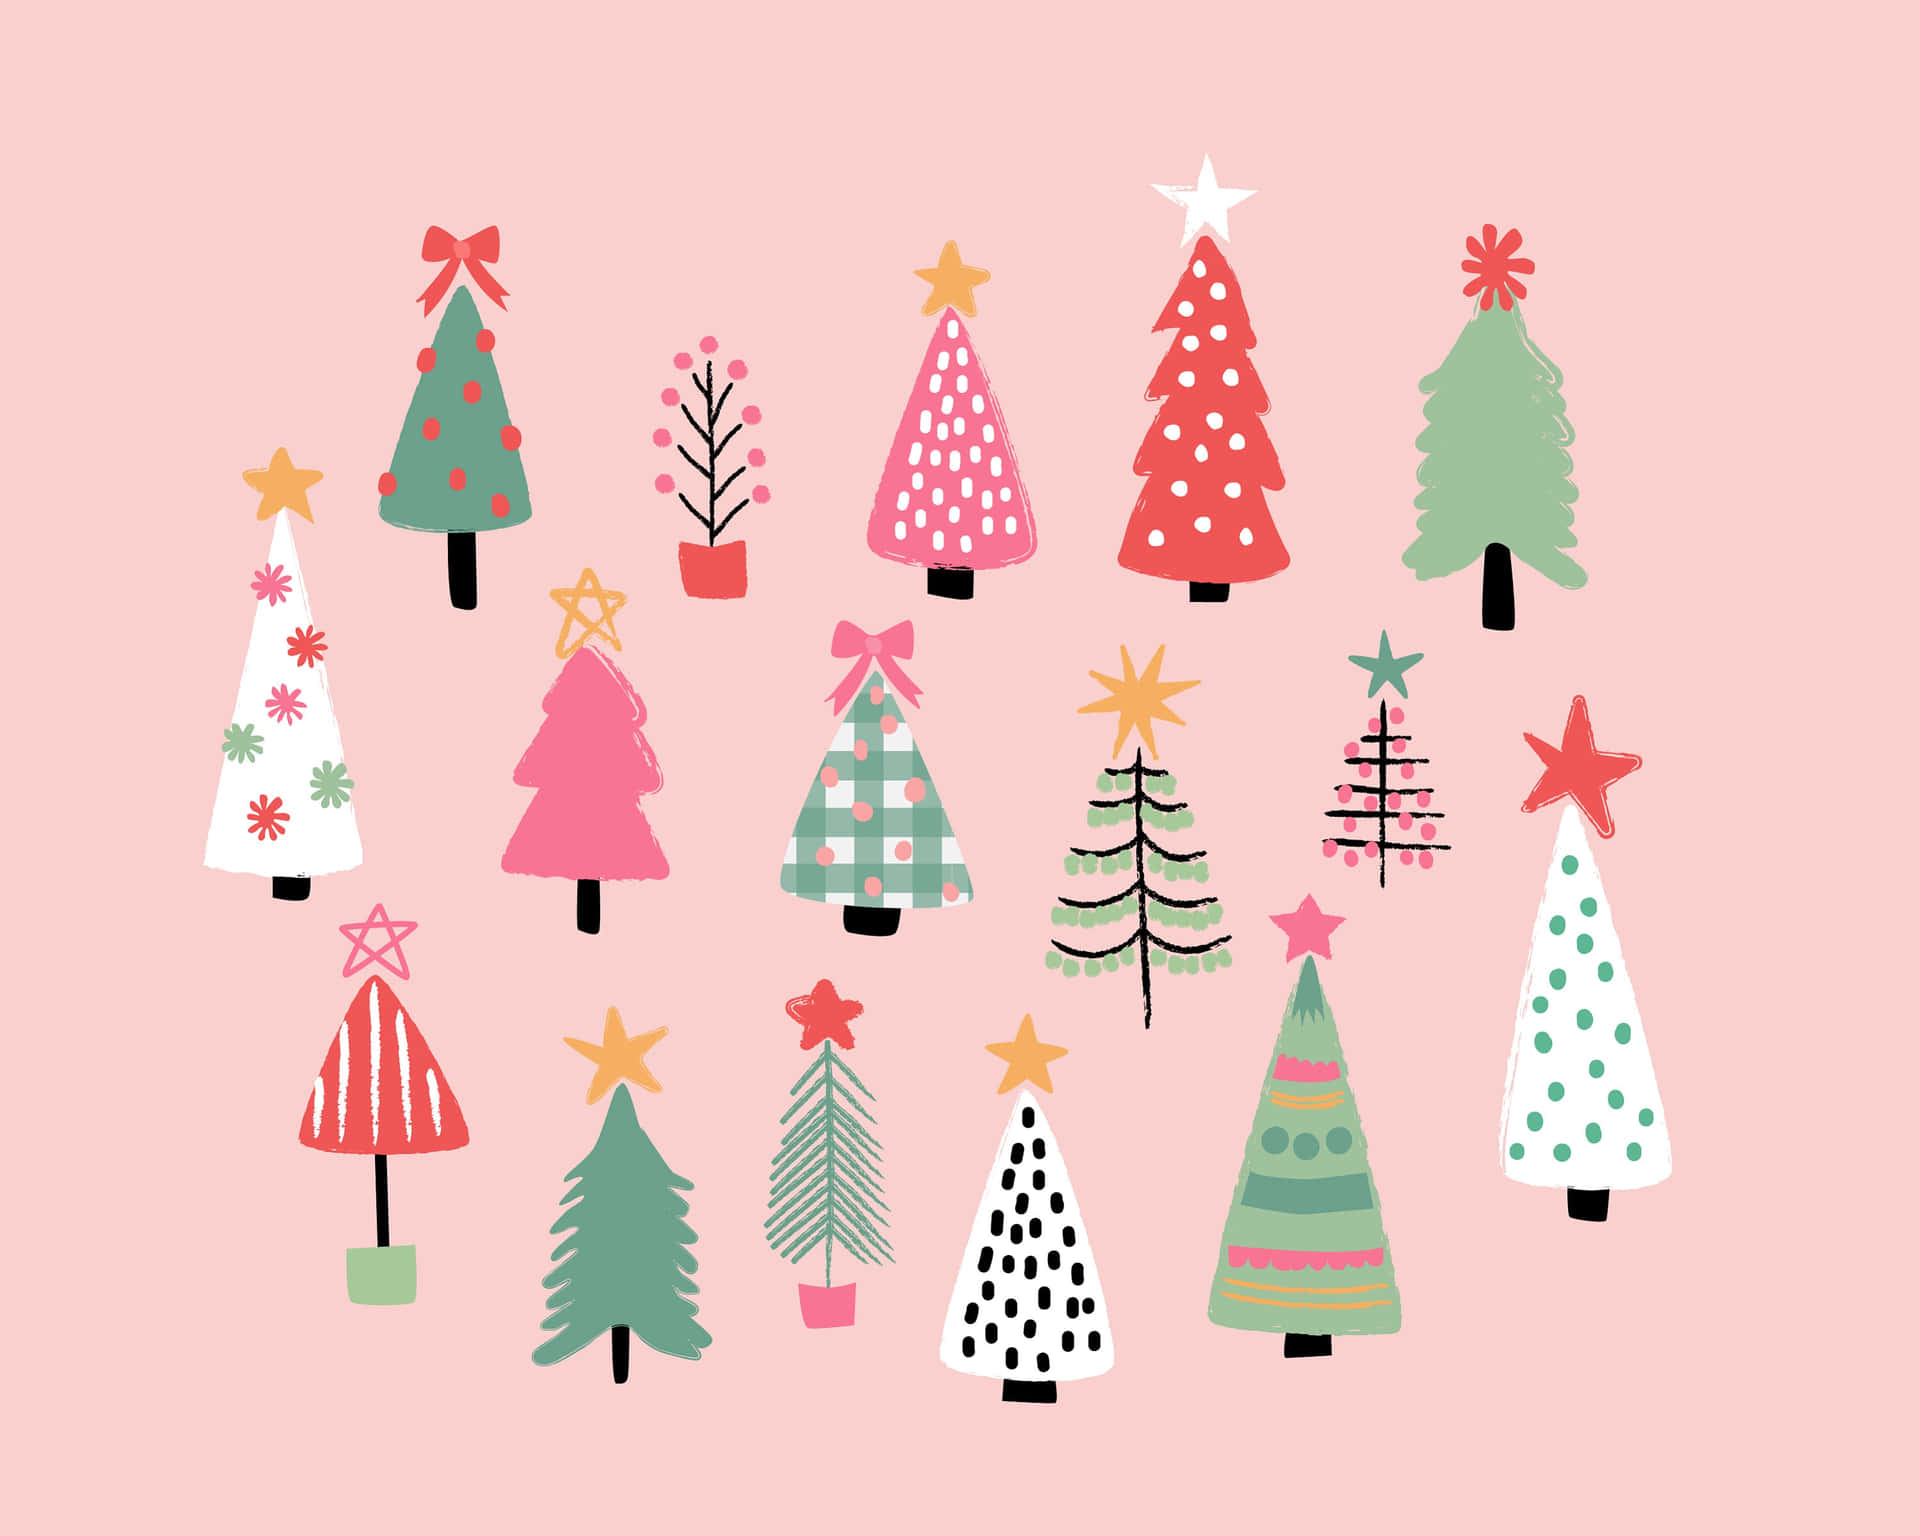 Feiernsie Die Feiertage Mit Einem Festlichen Rosa Weihnachtsbaum! Wallpaper